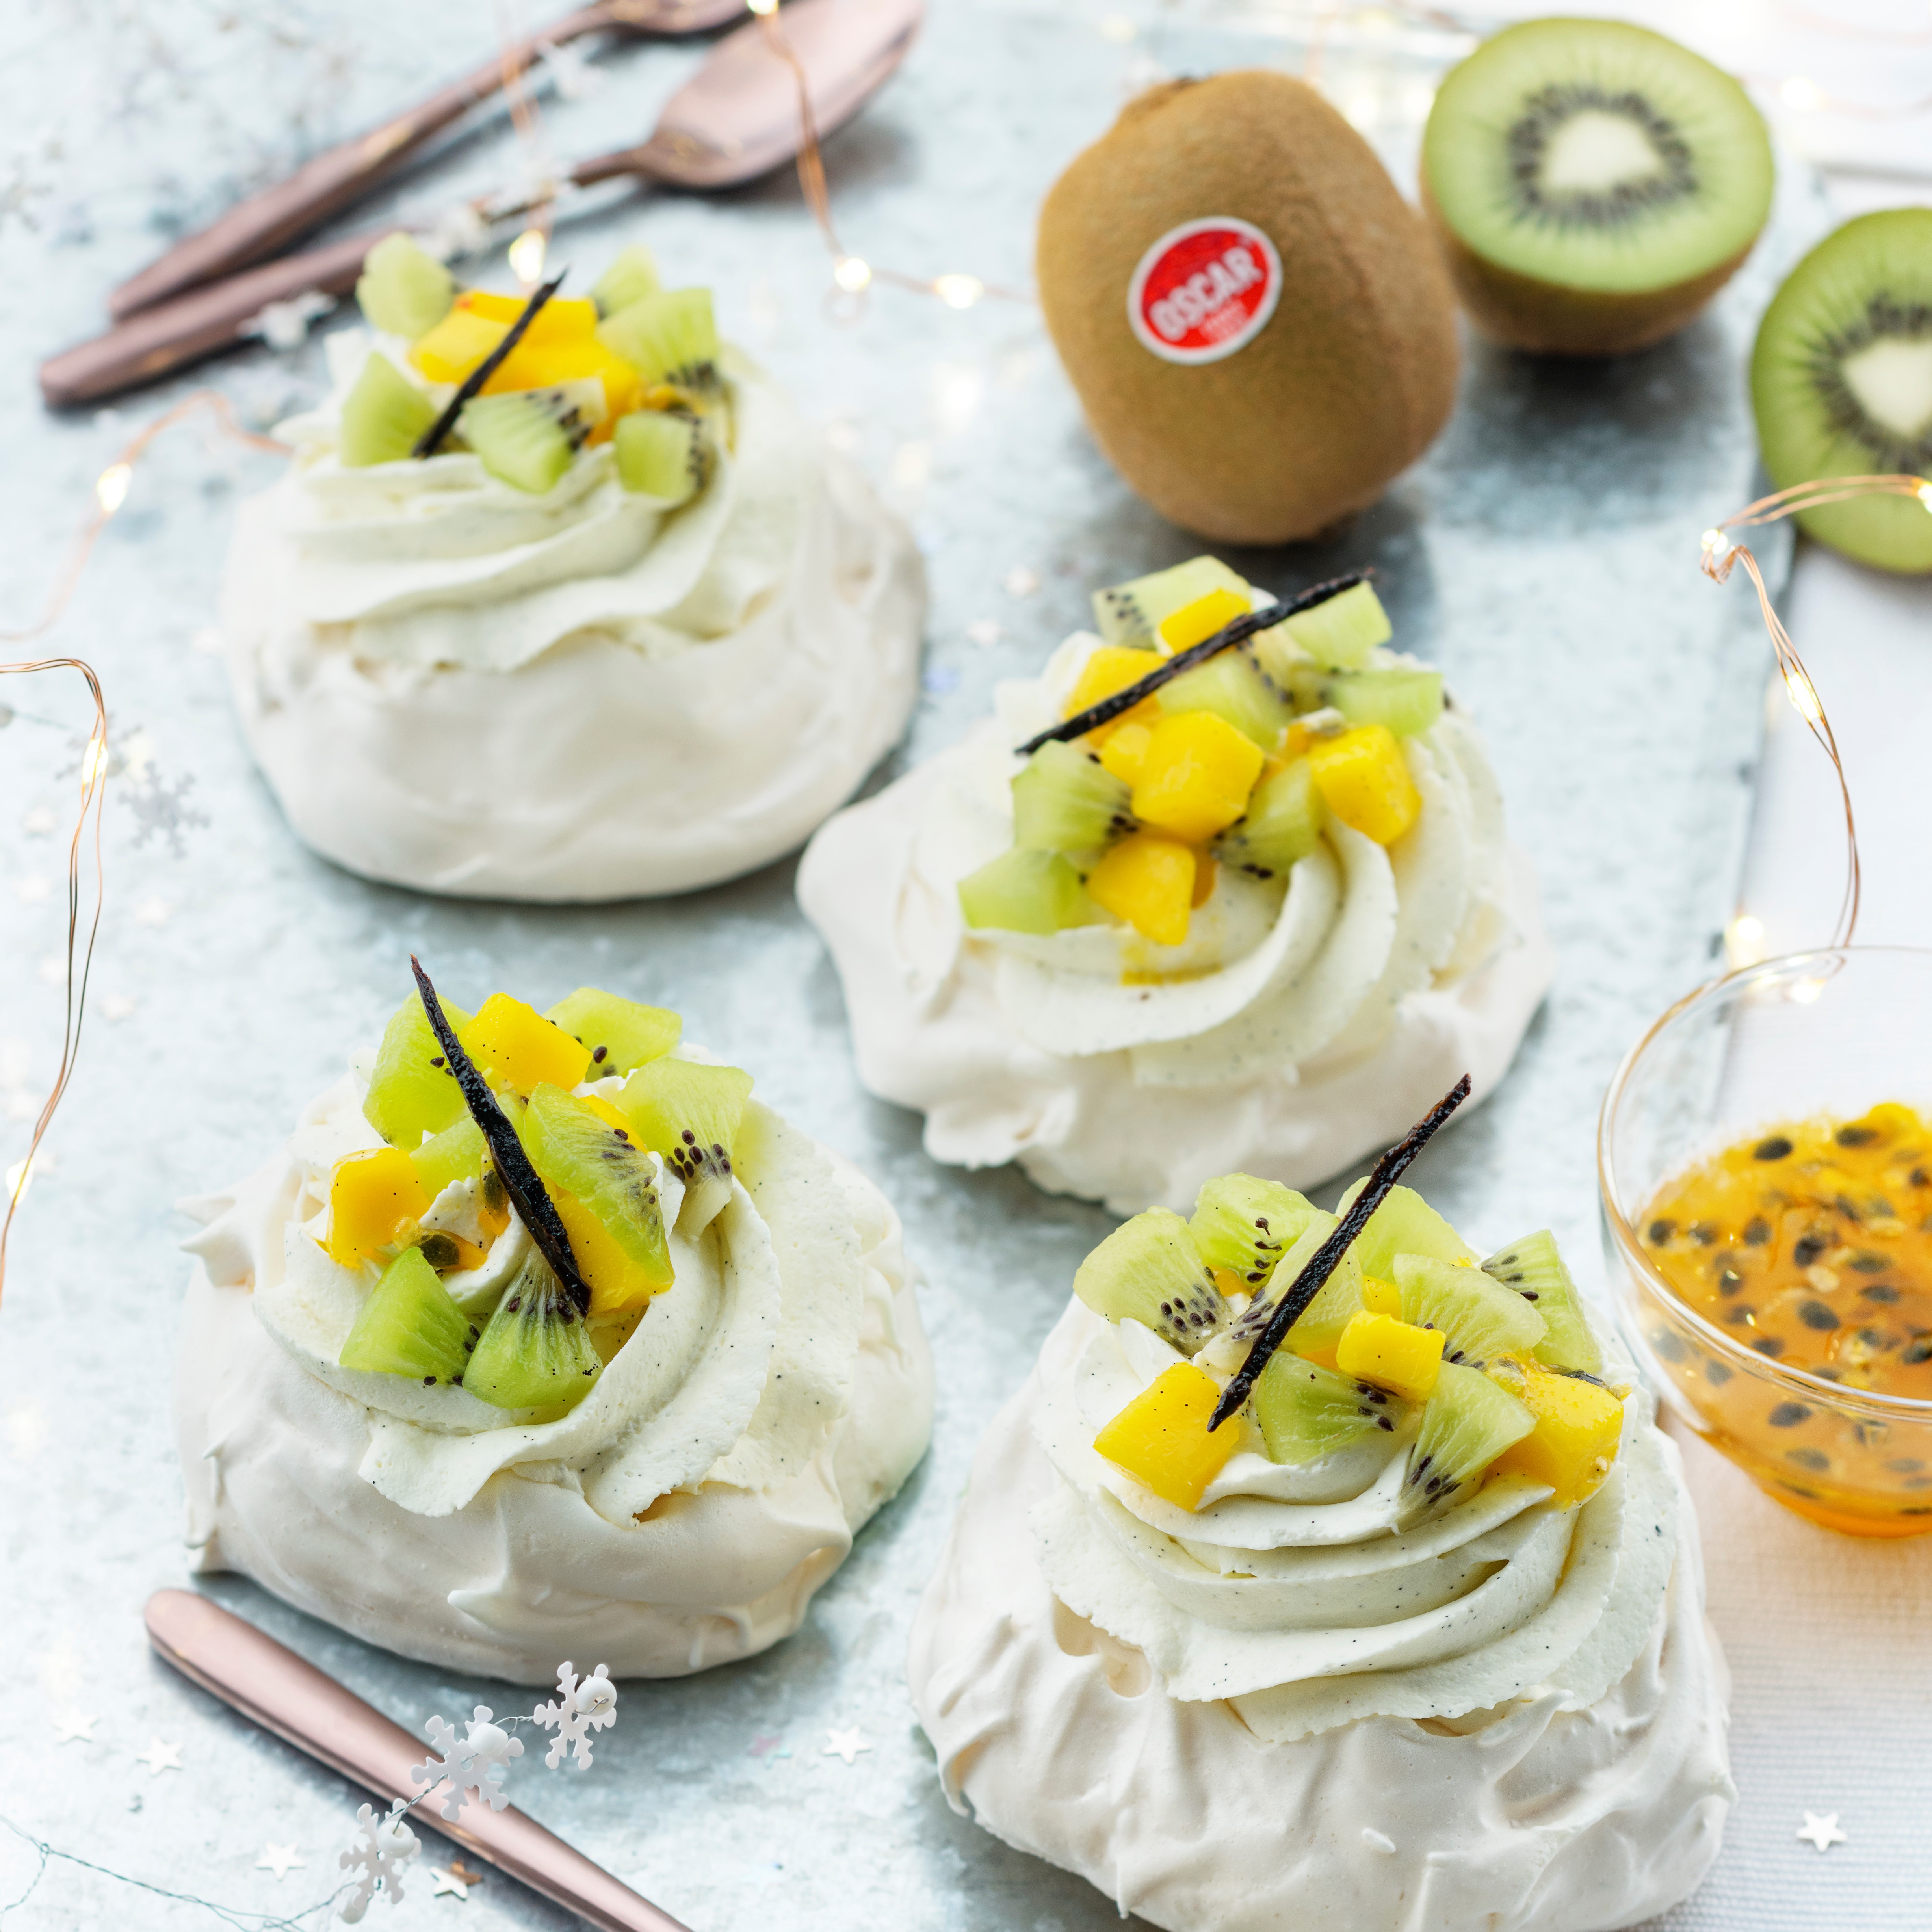 Pavlova with cream and Oscar® kiwi fruits-mango duo